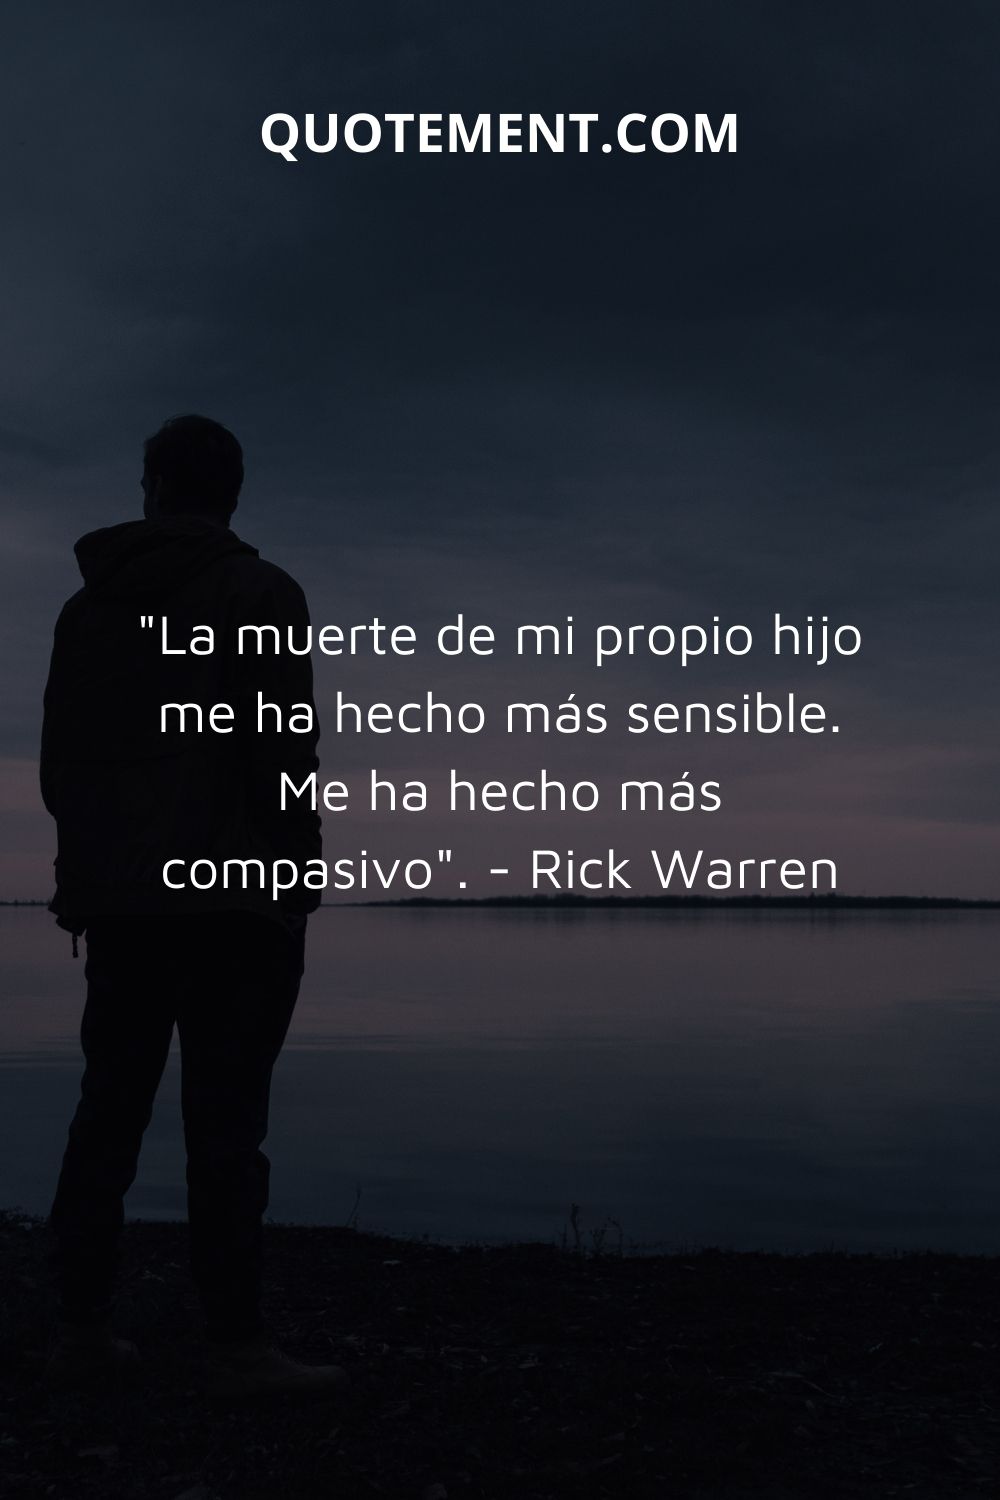 "La muerte de mi propio hijo me ha hecho más sensible. Me ha hecho más compasivo". - Rick Warren